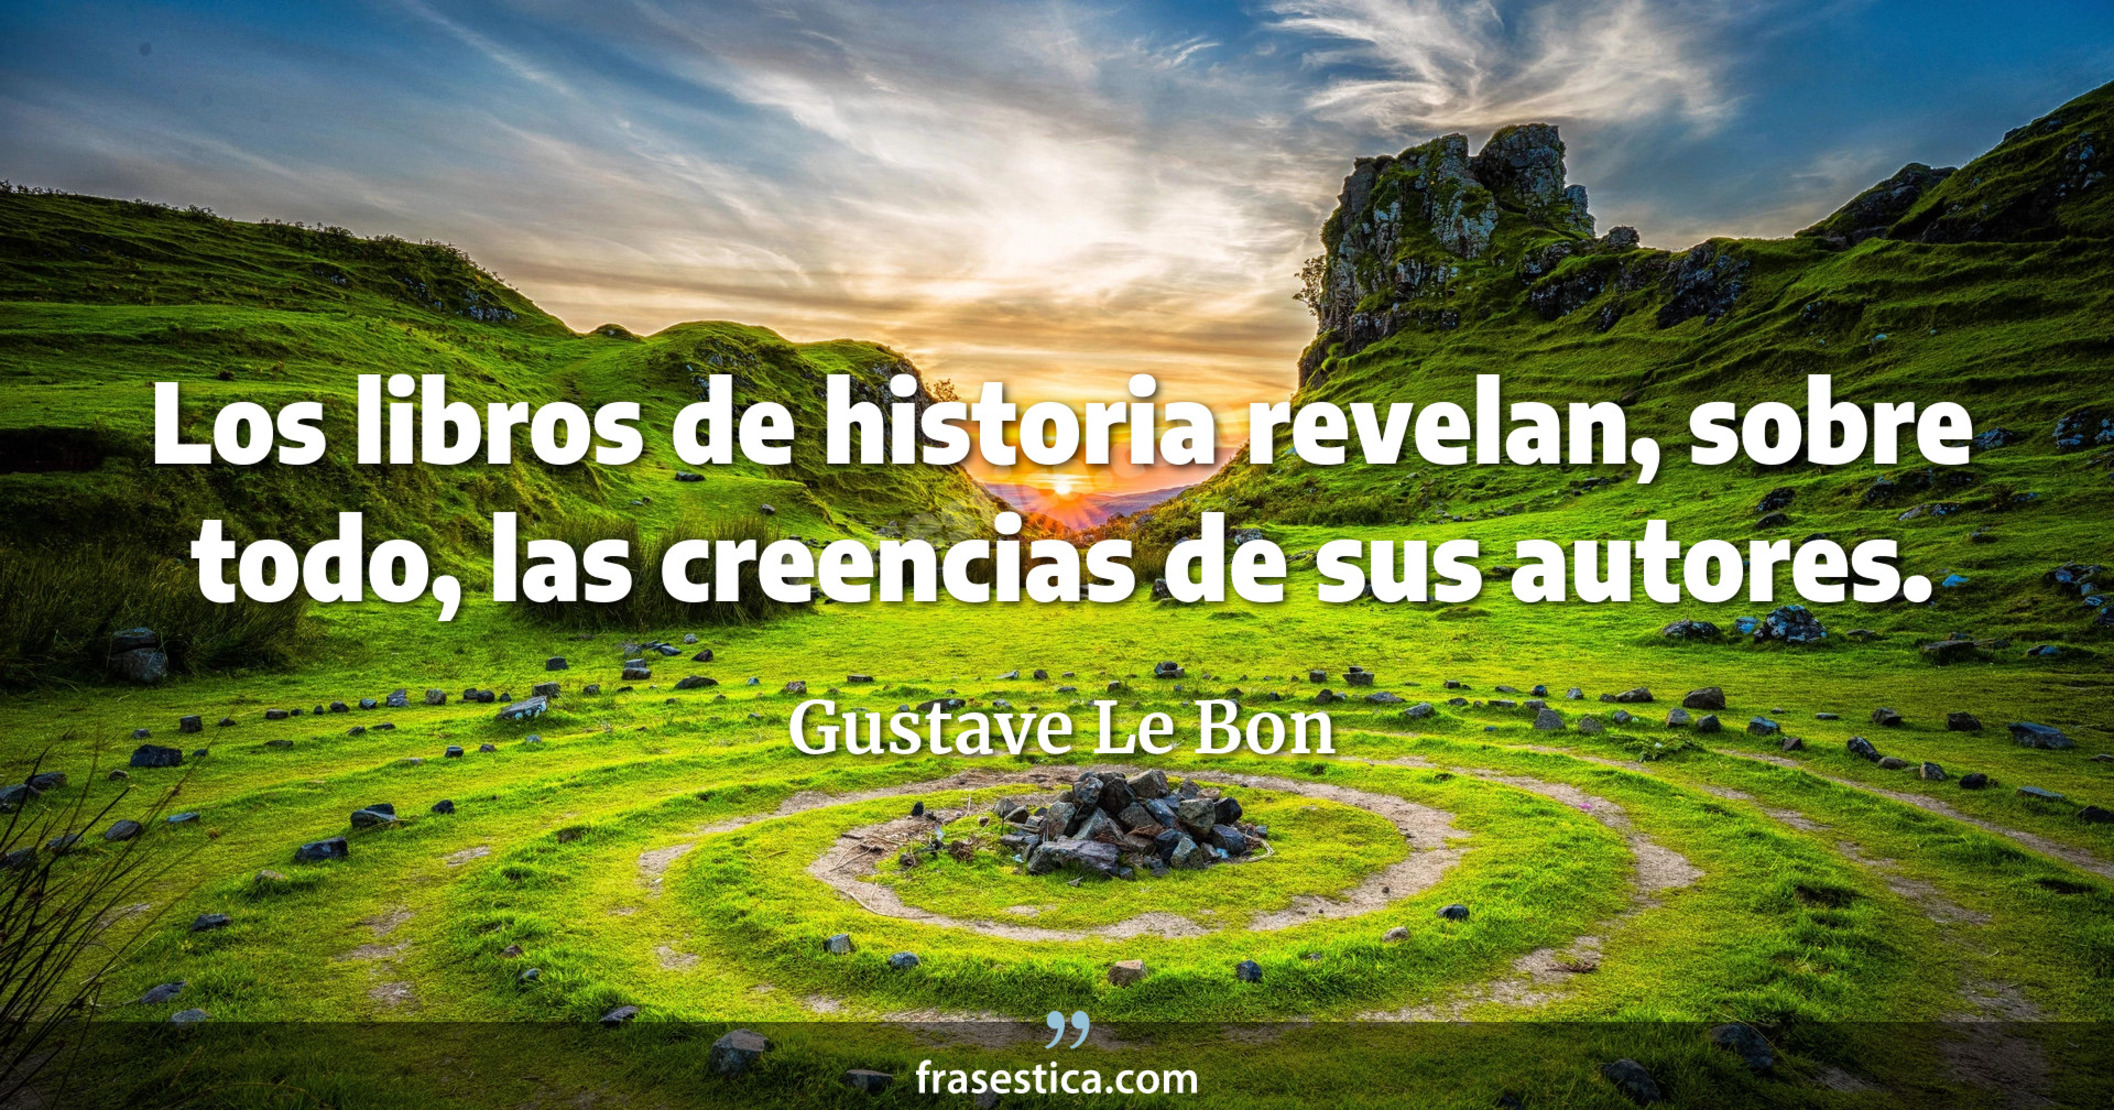 Los libros de historia revelan, sobre todo, las creencias de sus autores. - Gustave Le Bon